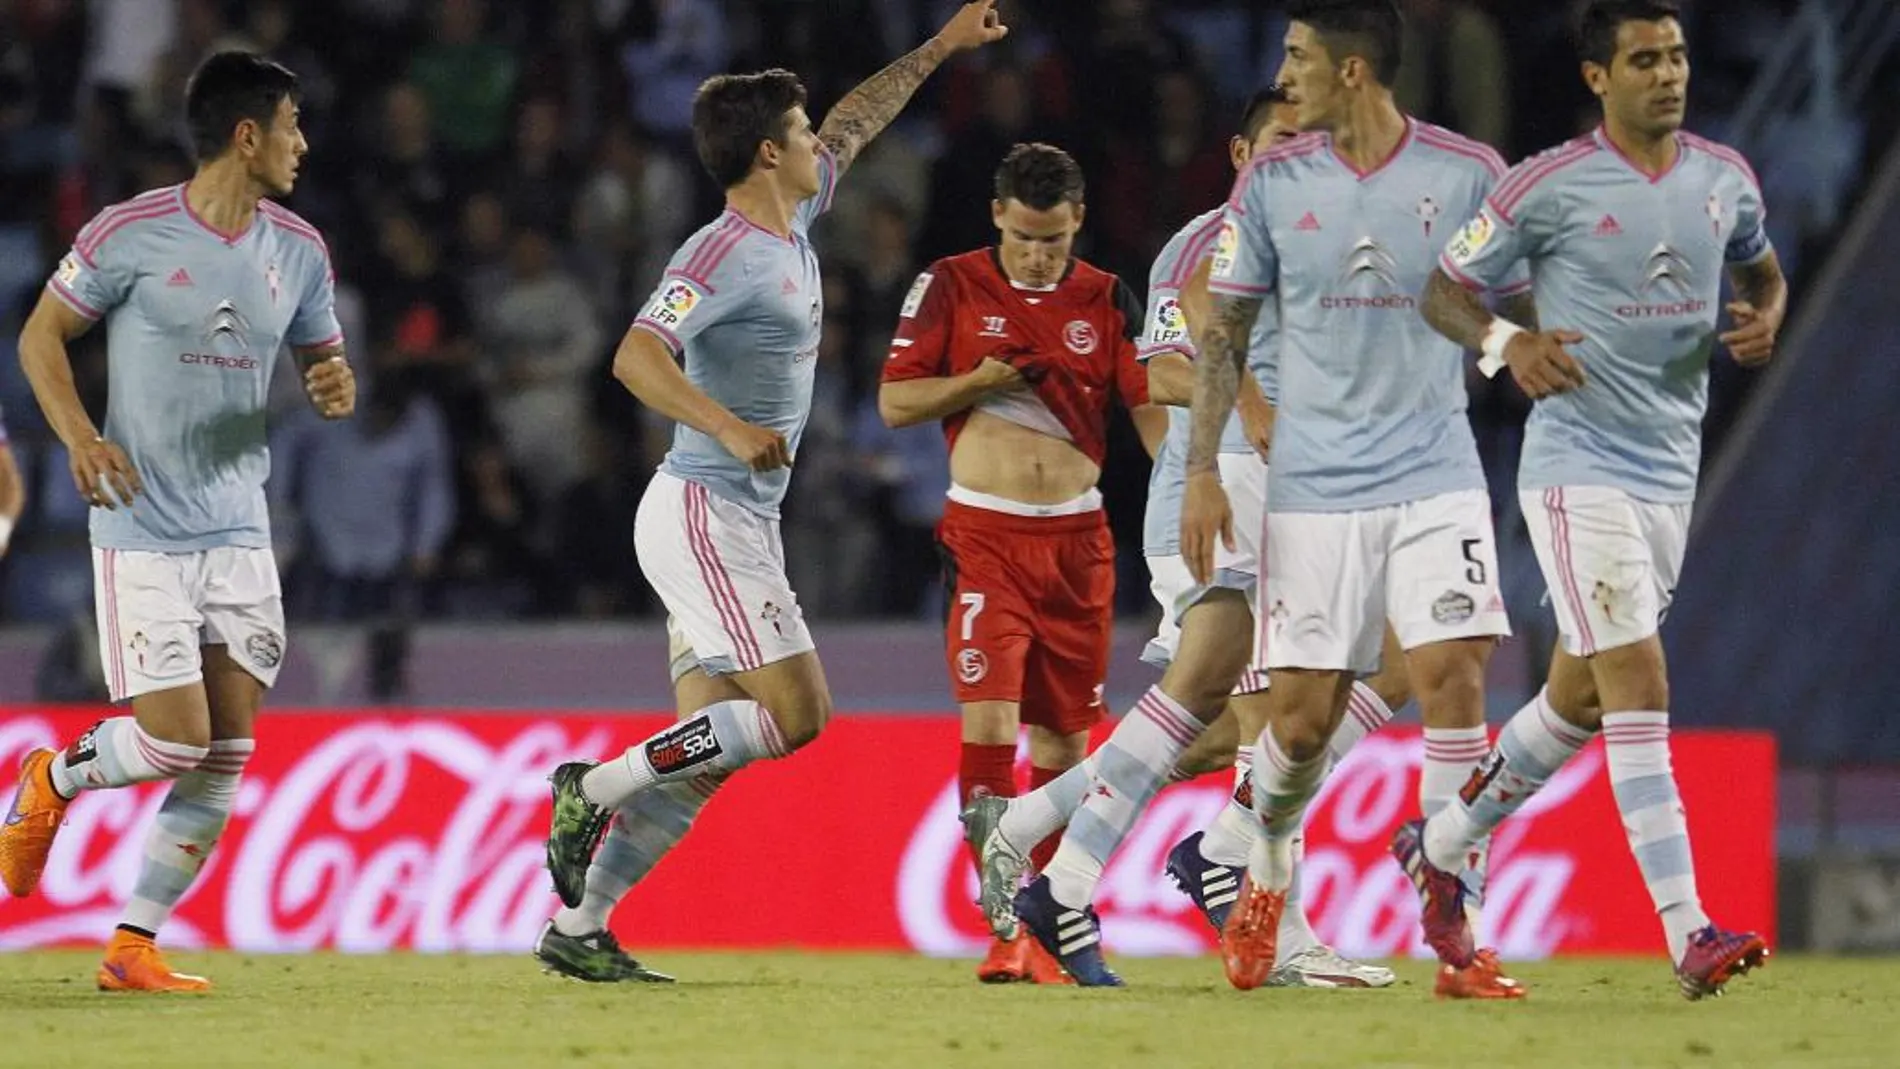 El jugador del Celta Santi Mina (2-i) celebra tras marcar ante el Sevilla, durante el partido